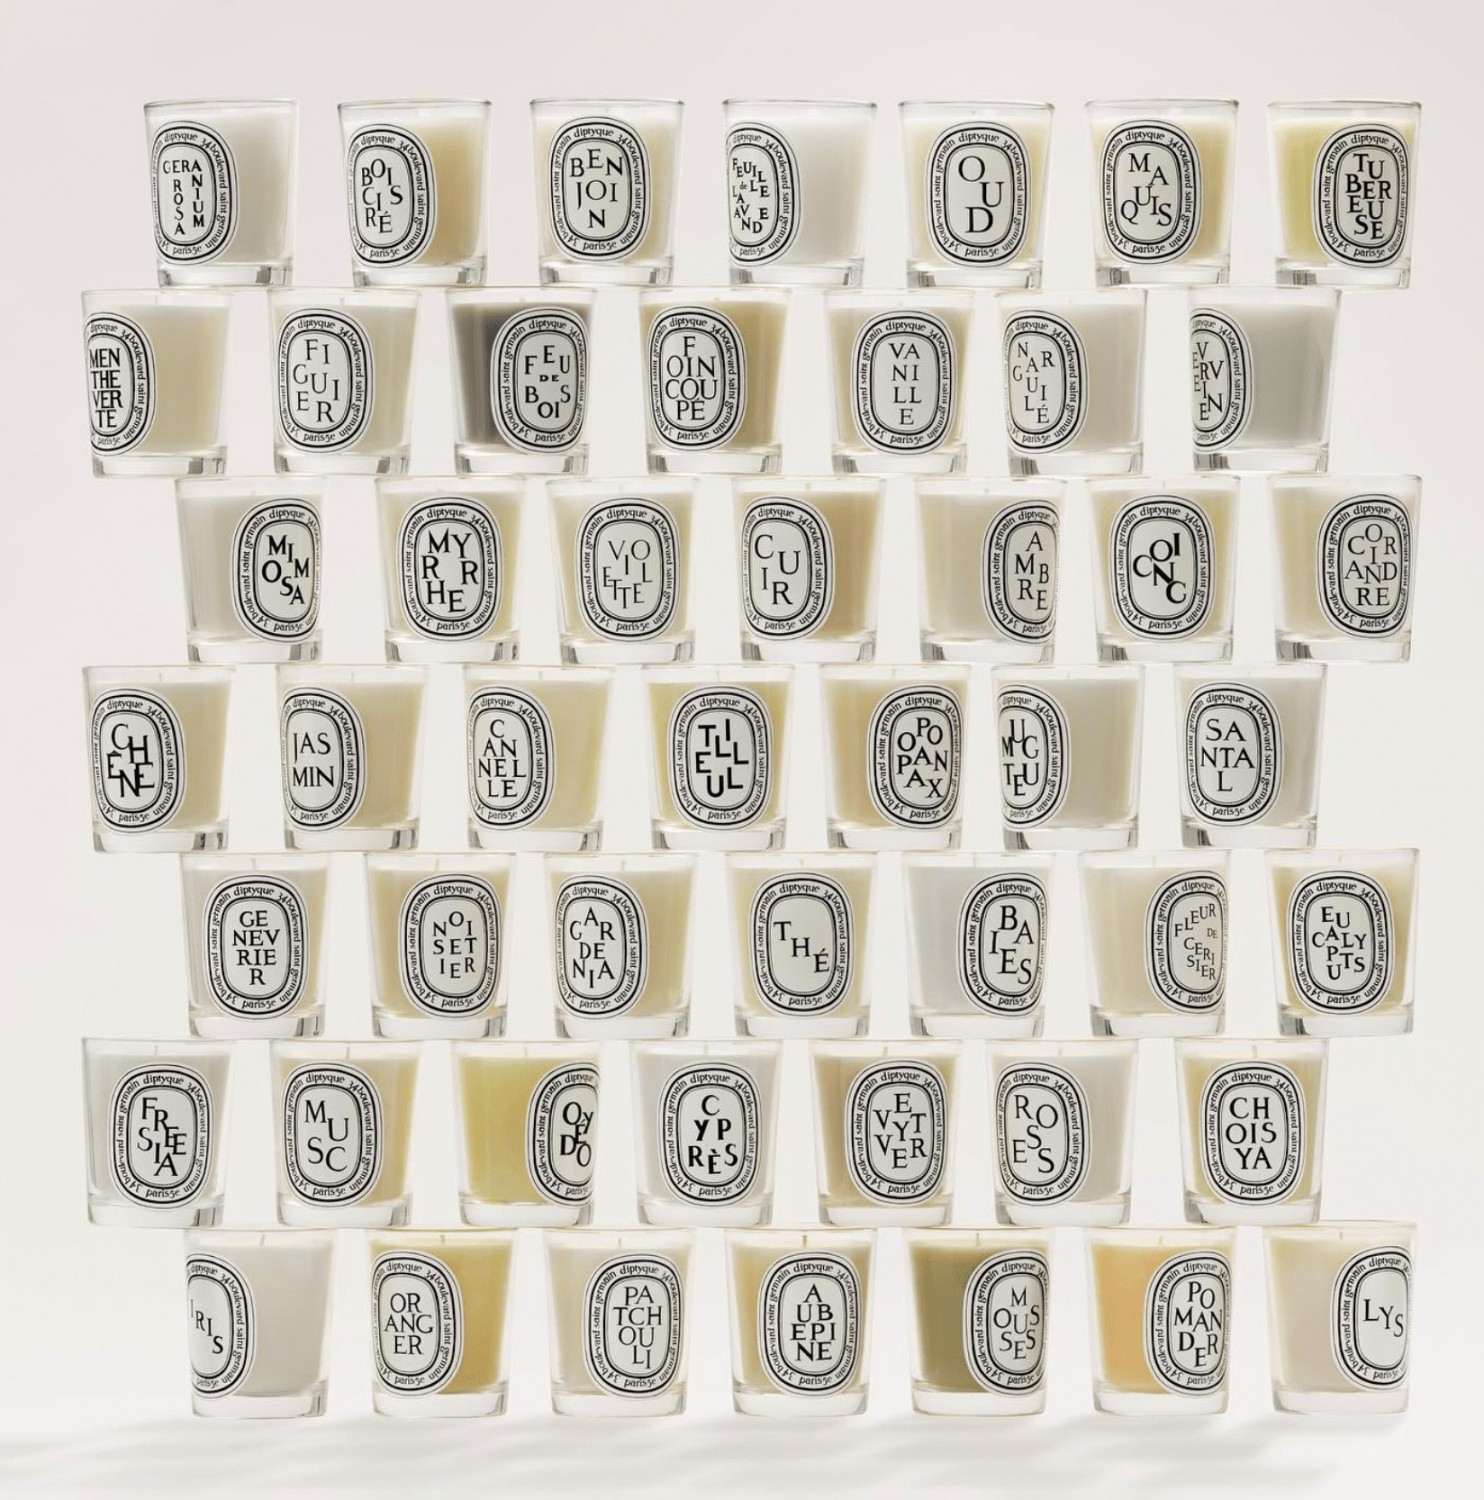 Diptyque выпустил набор из 49 ароматических свечей к юбилею бренда — сколько стоит сет? 